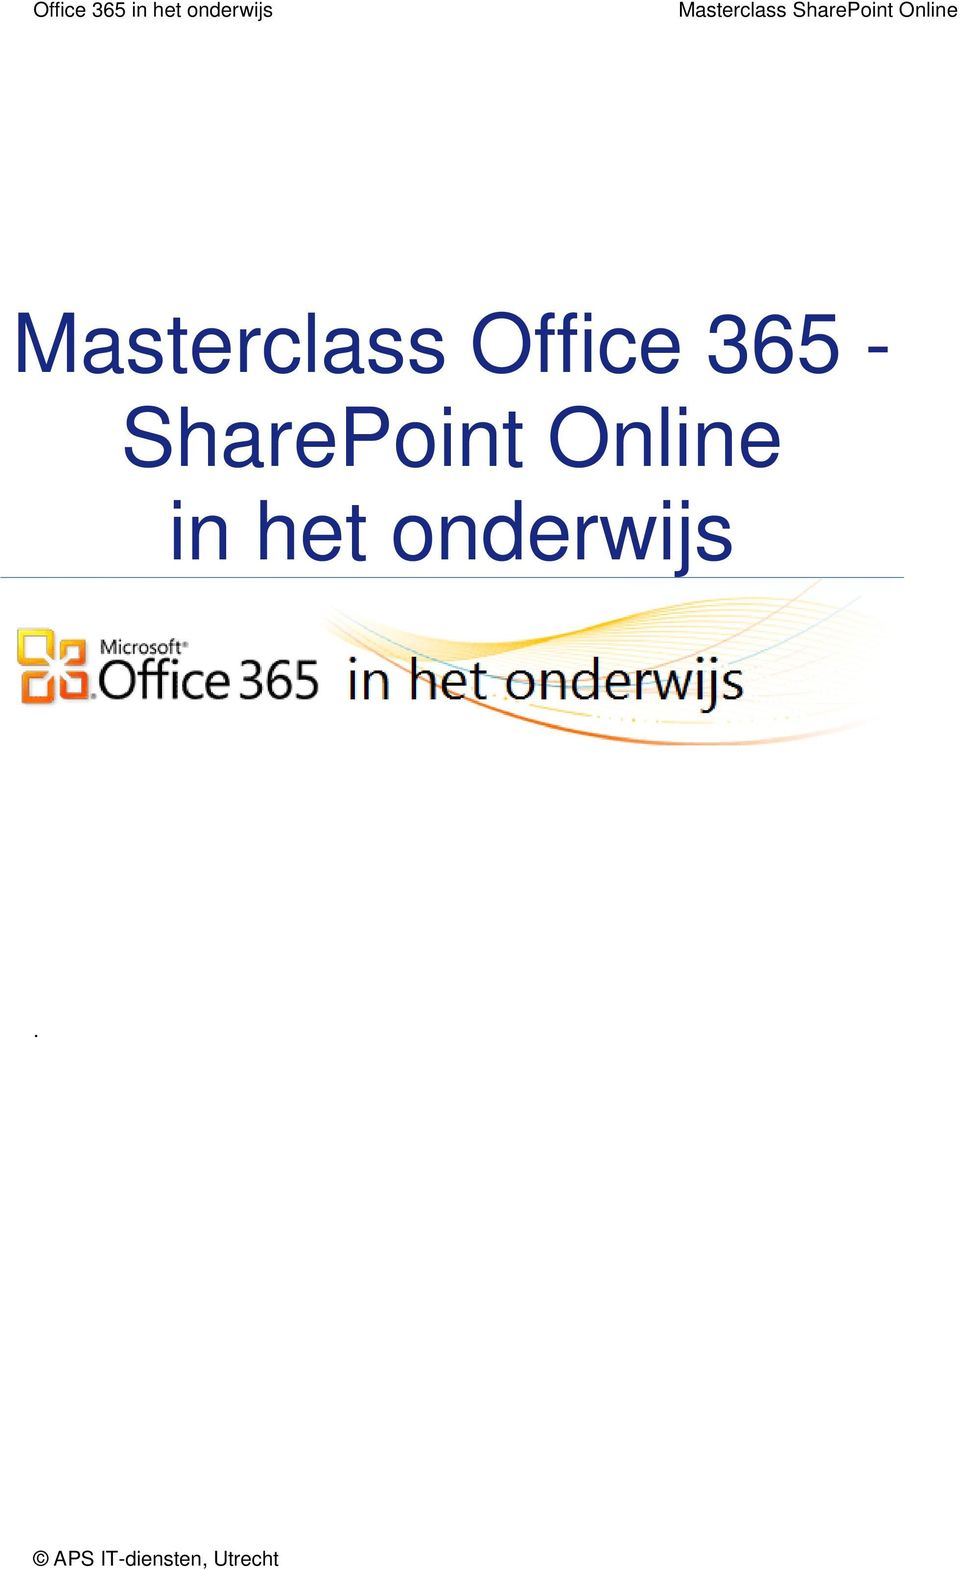 Masterclass Office 365 - SharePint